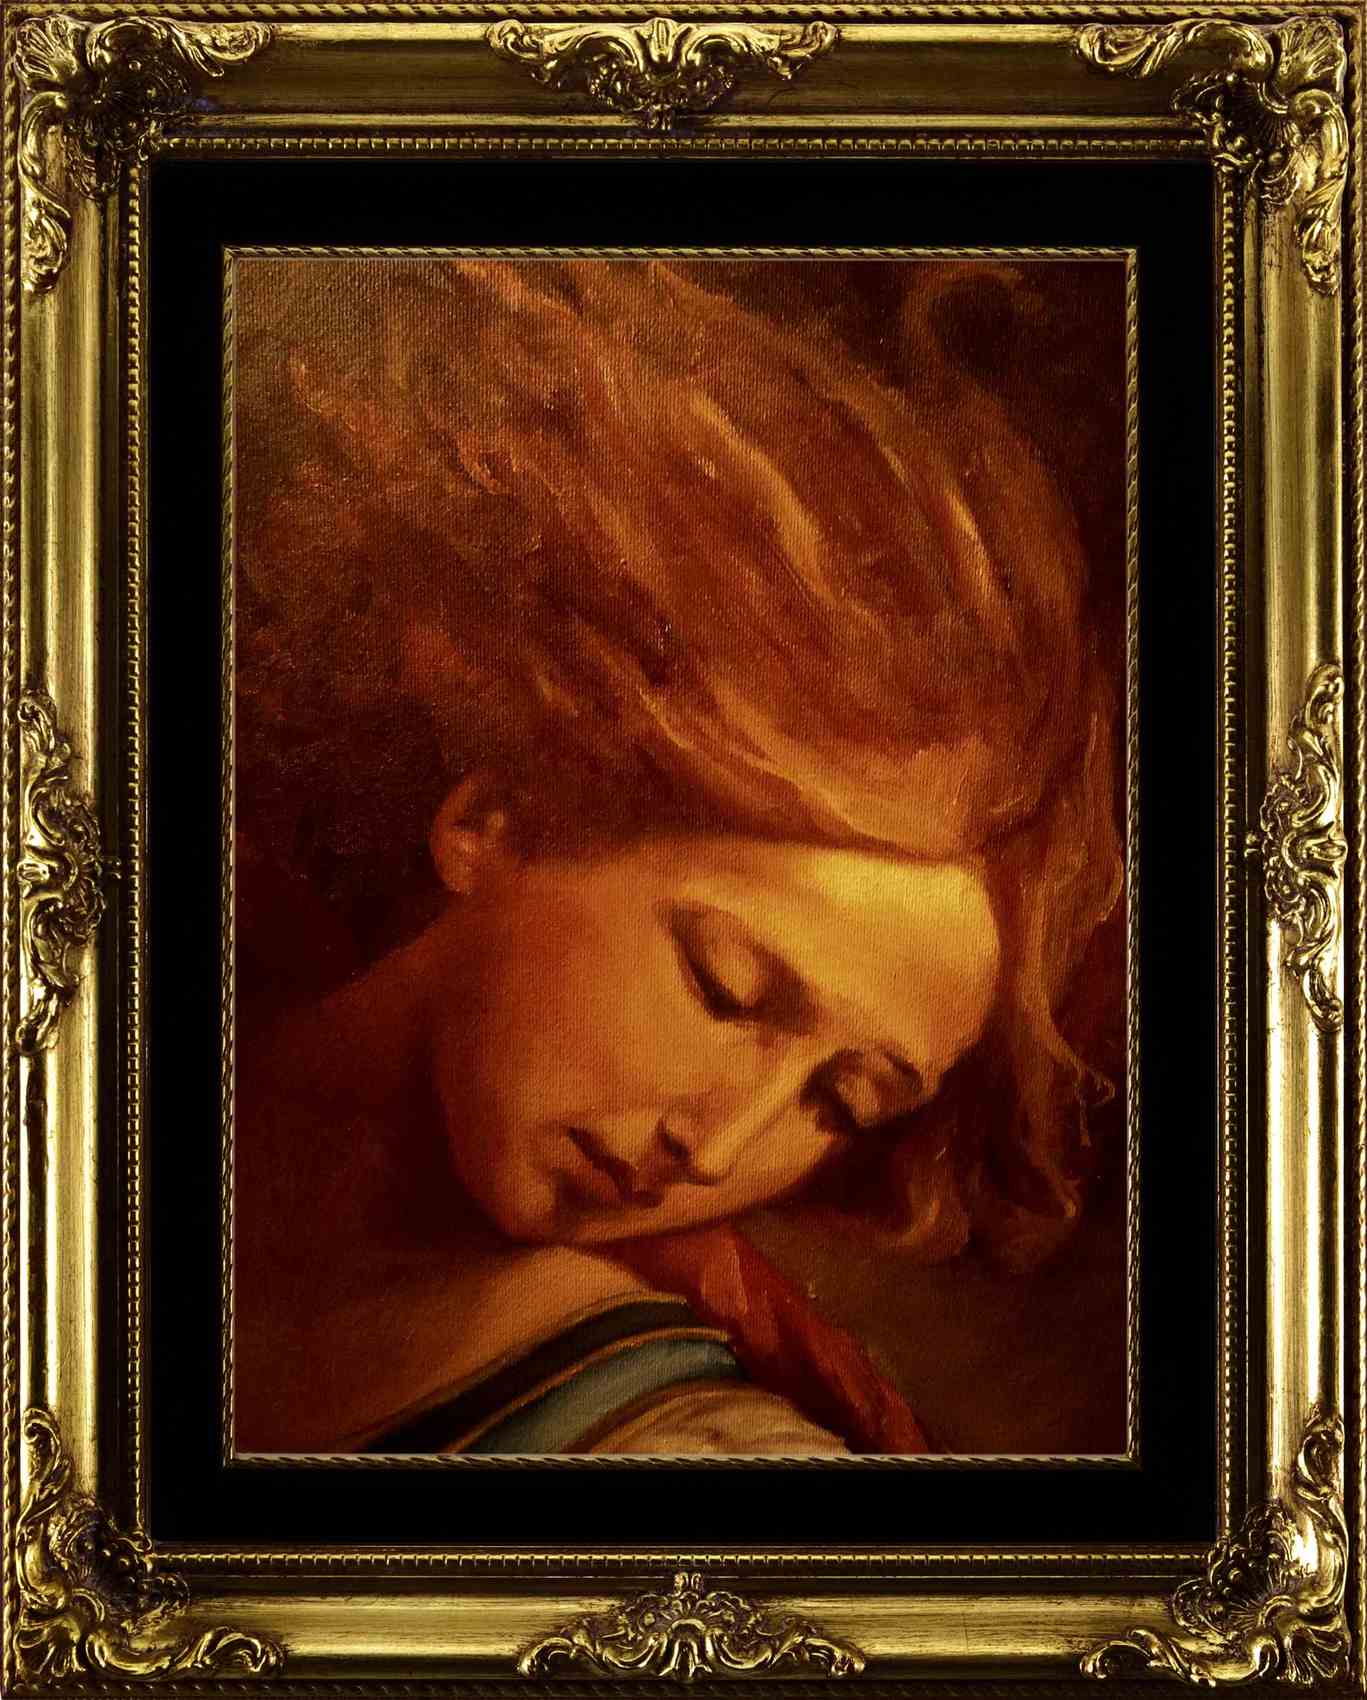 Archangel Michael N°134 by emilio-paintings